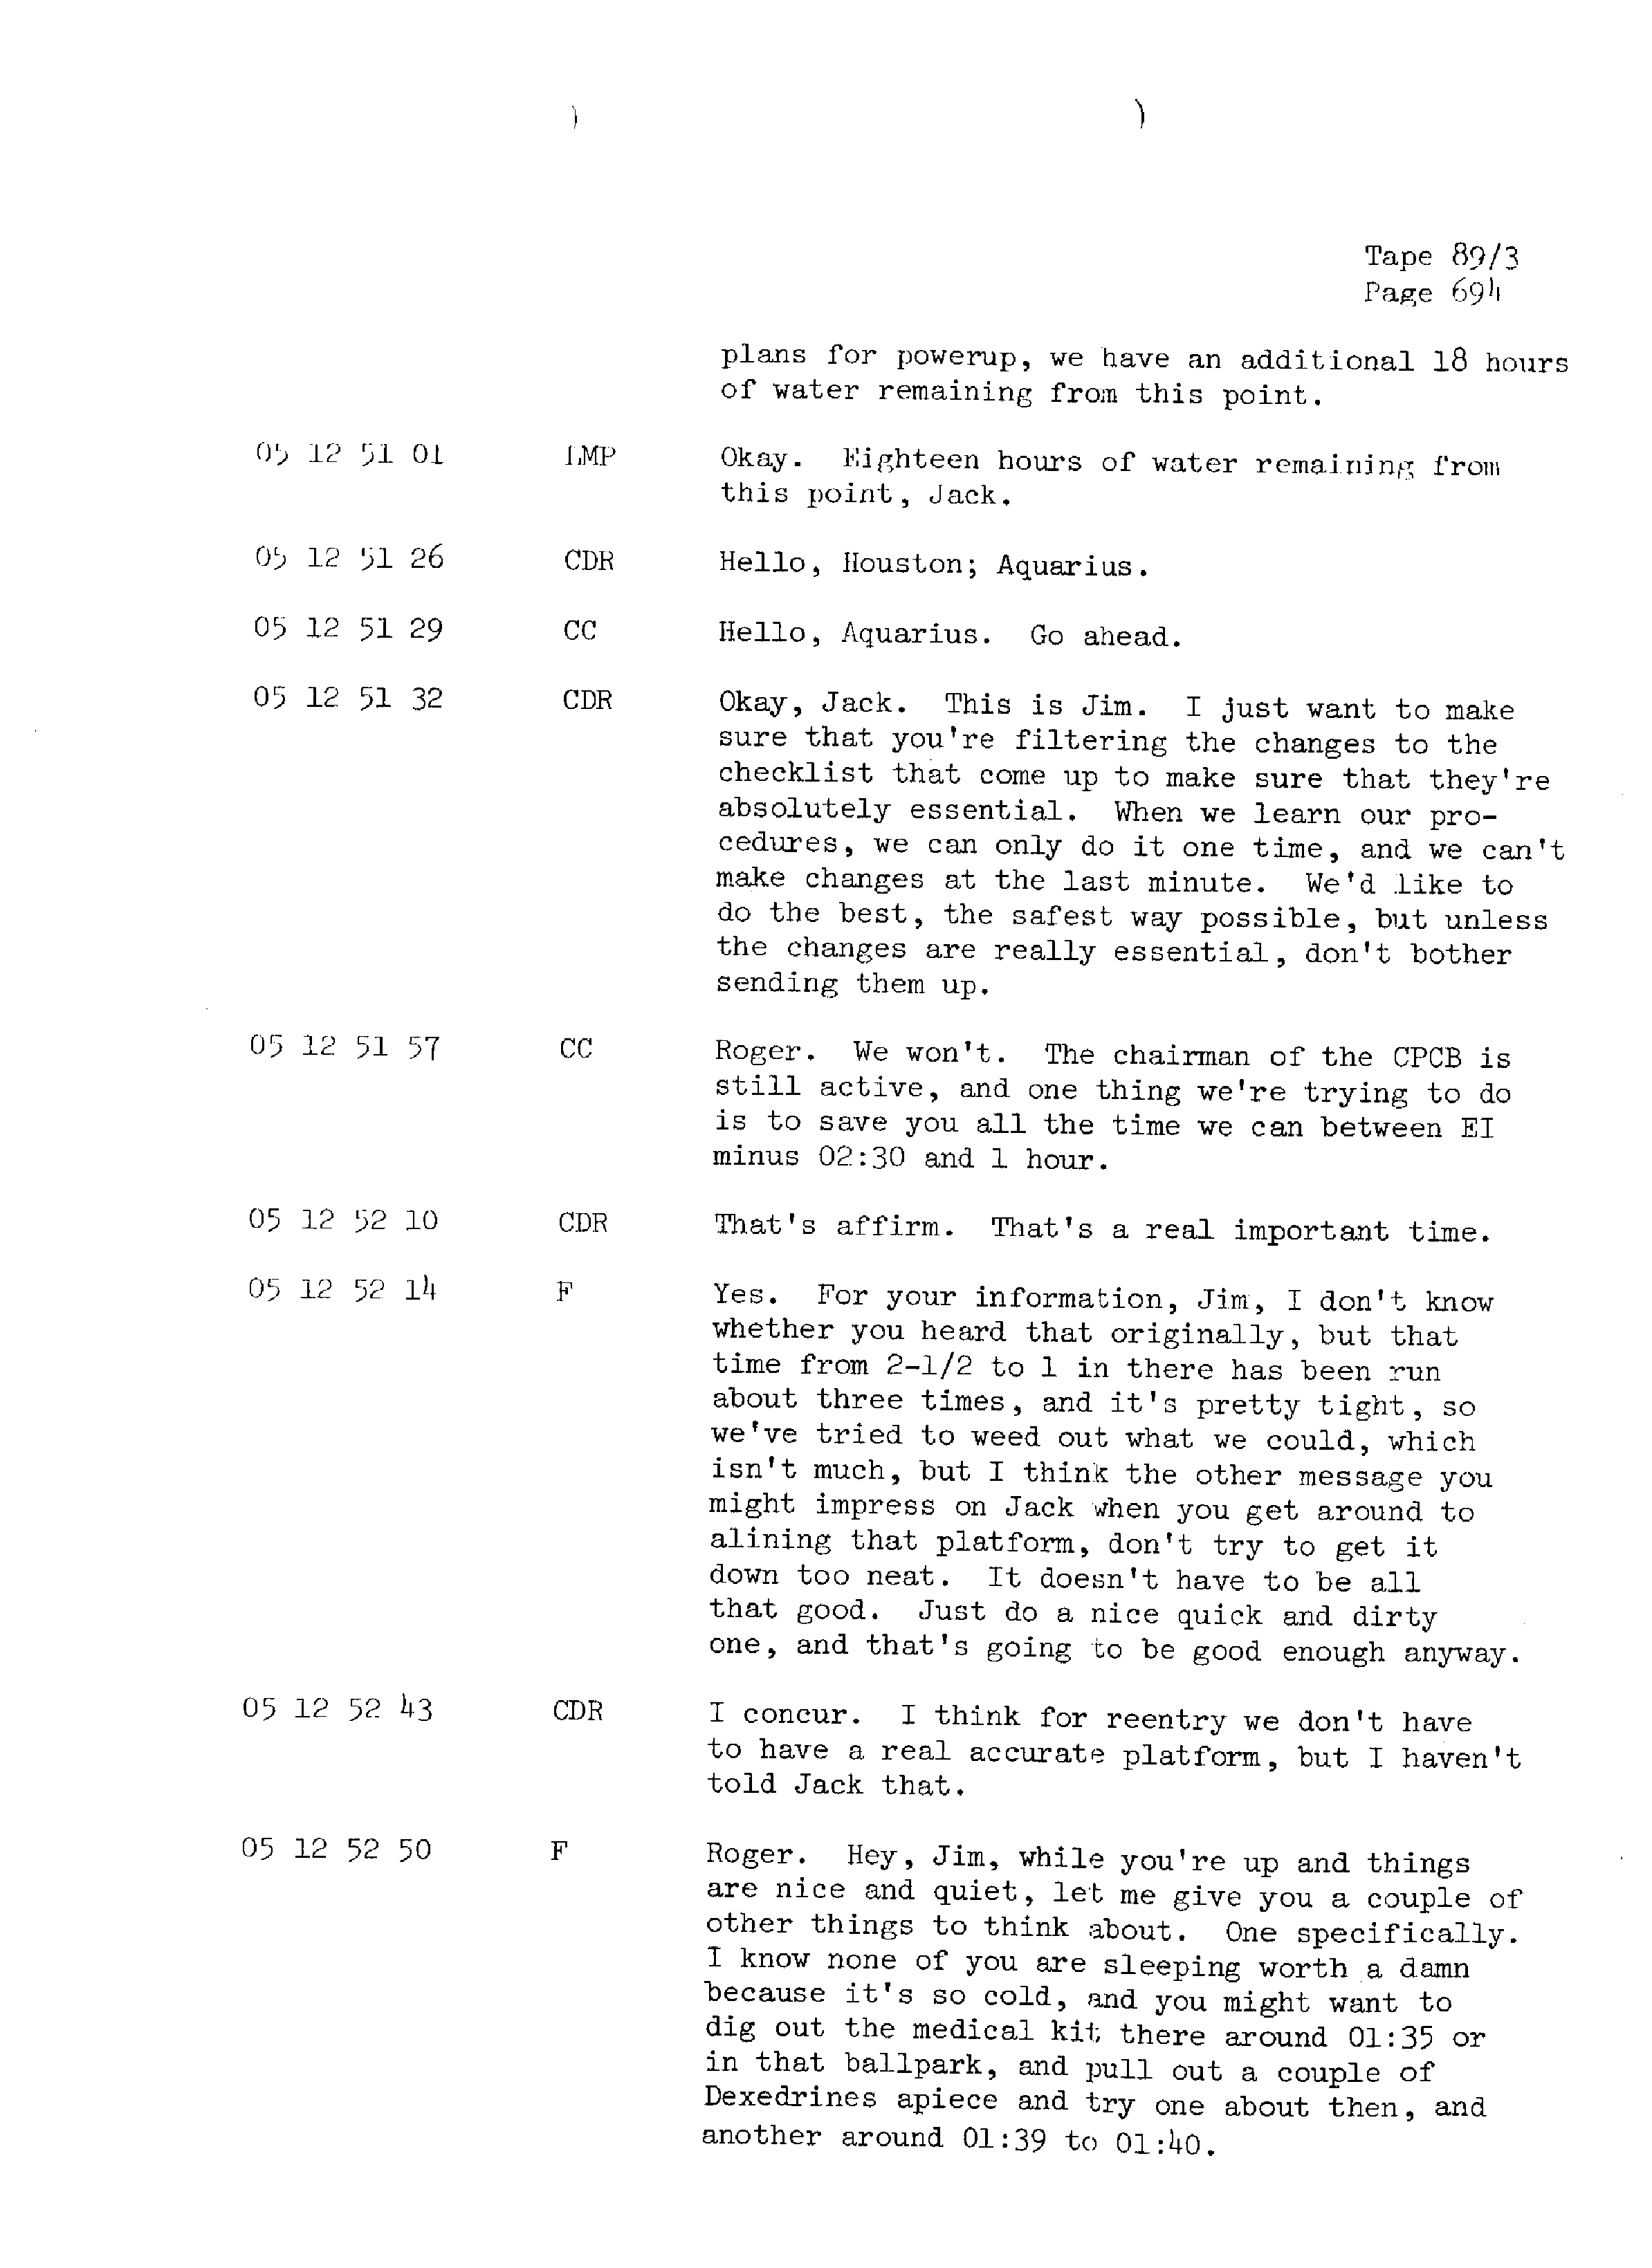 Page 701 of Apollo 13’s original transcript